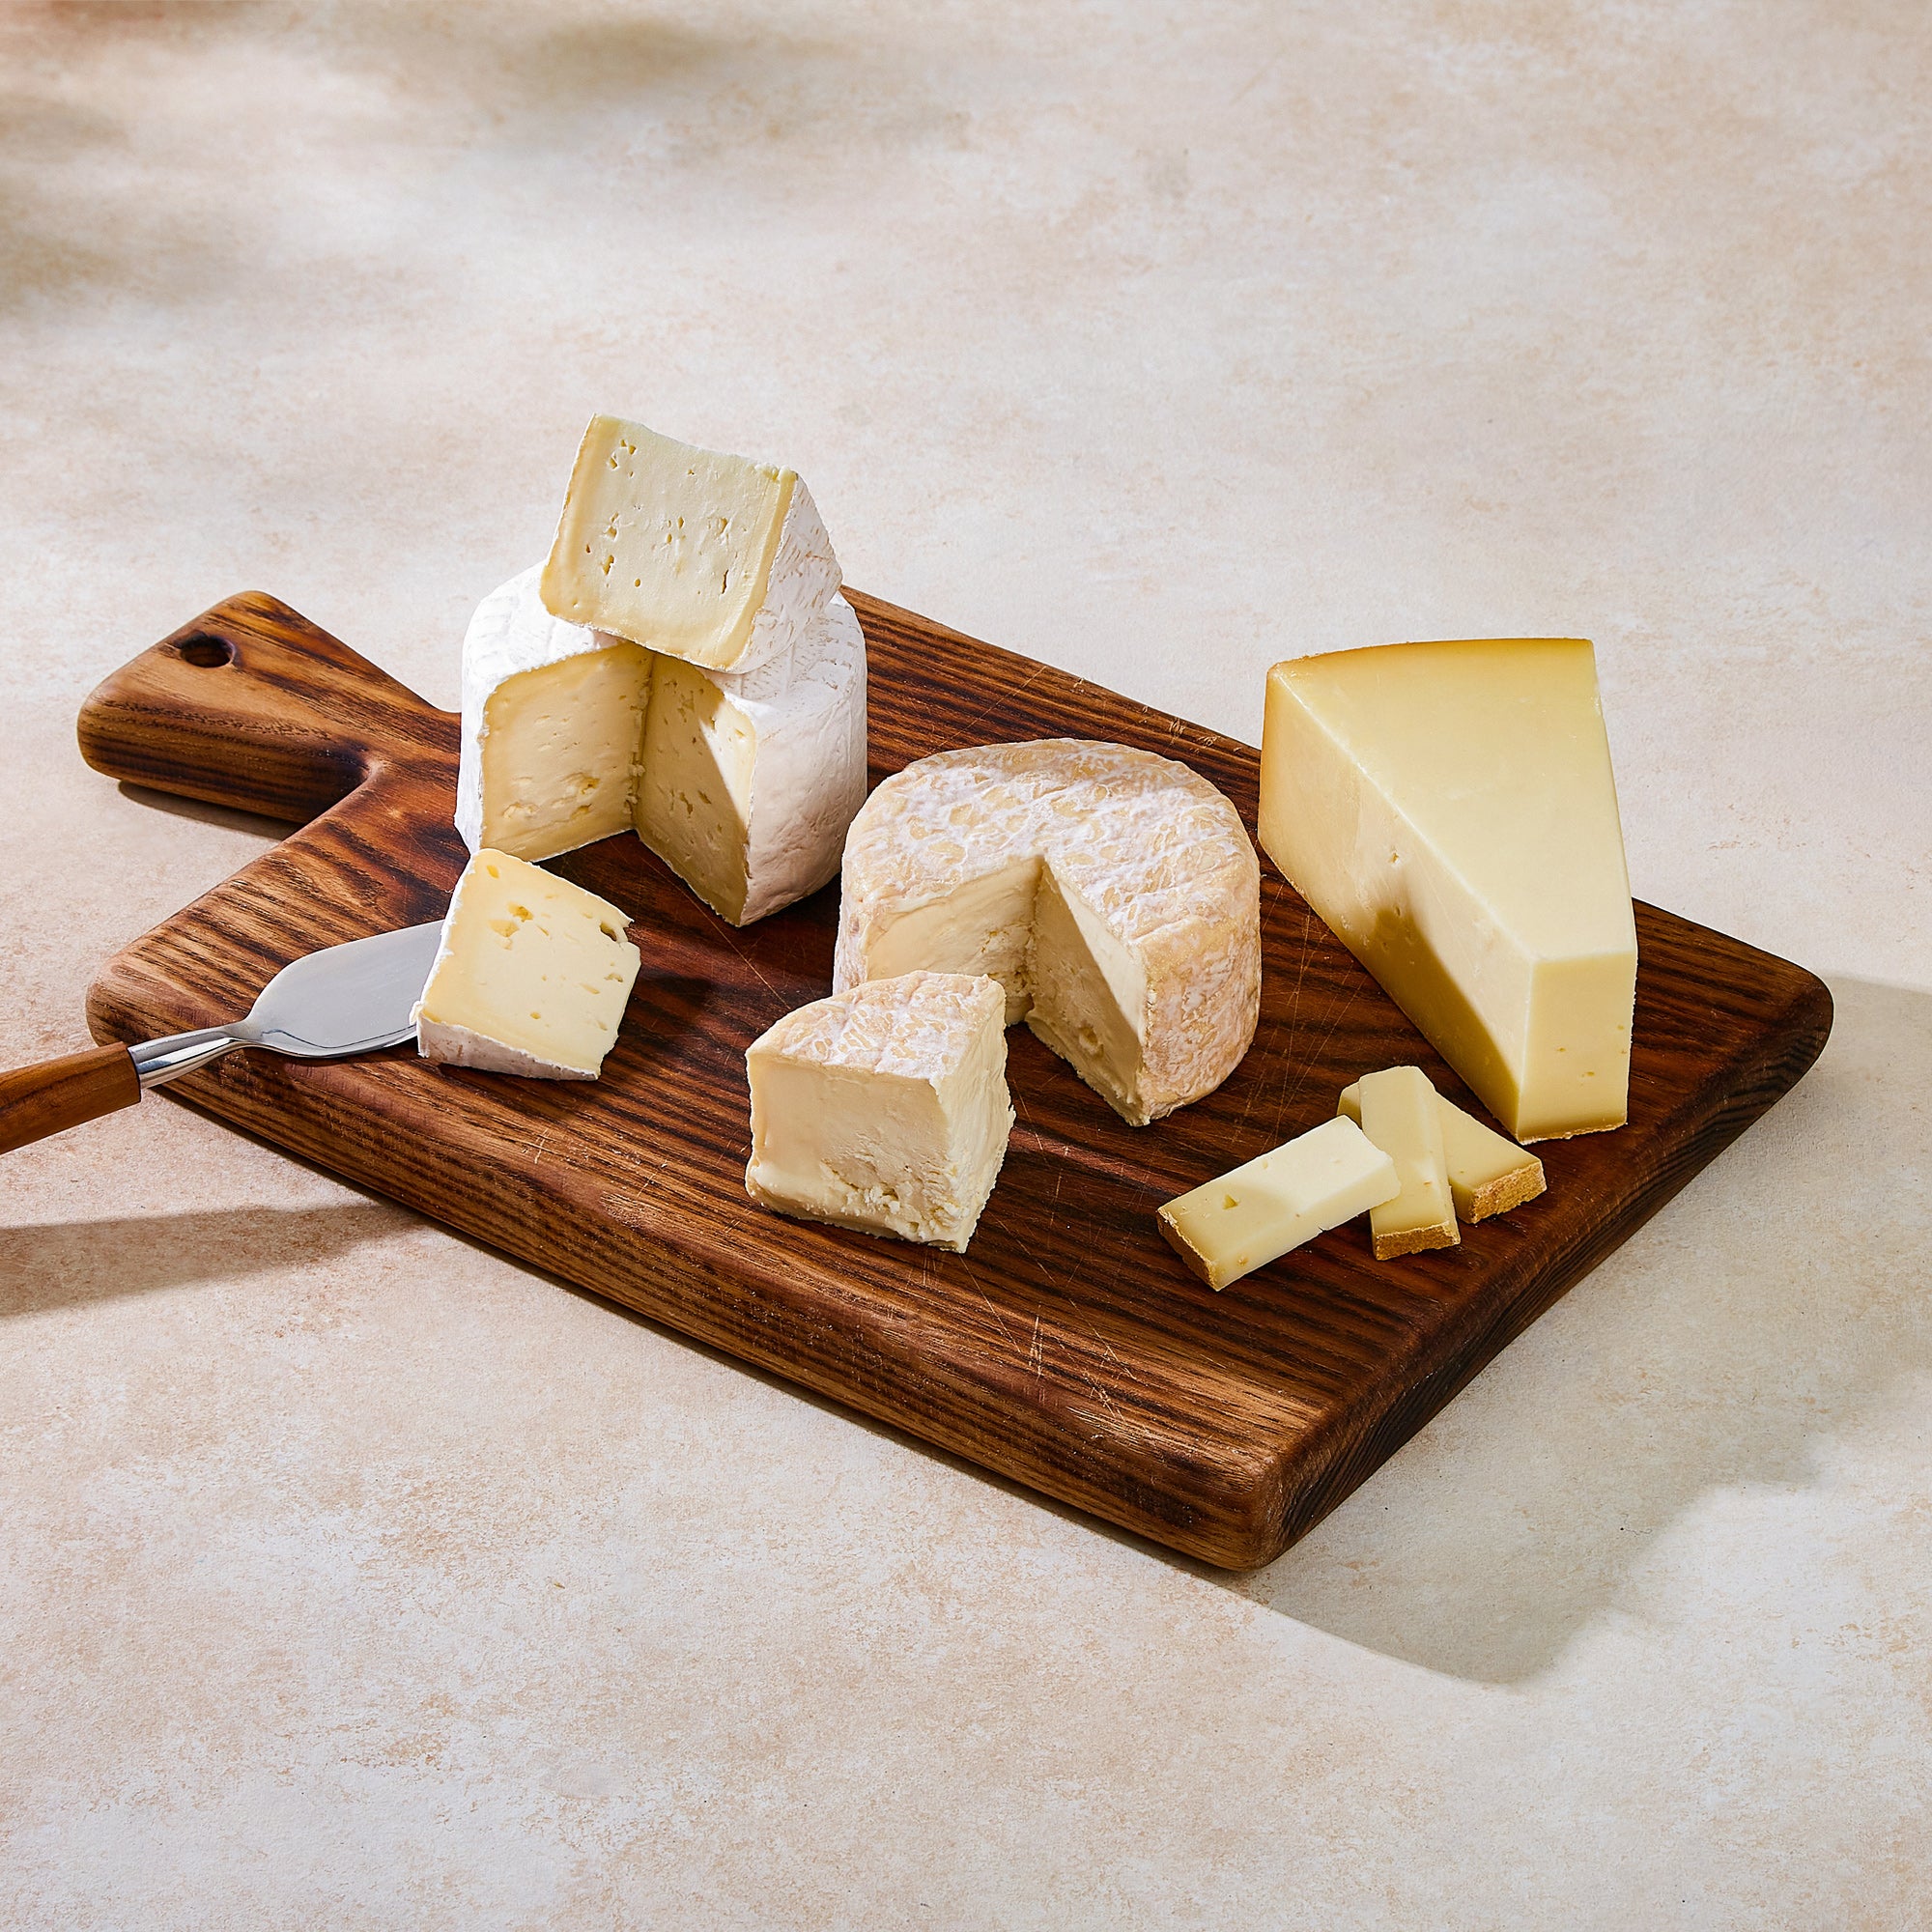 Quarterly Cheese Club – Cowgirl Creamery